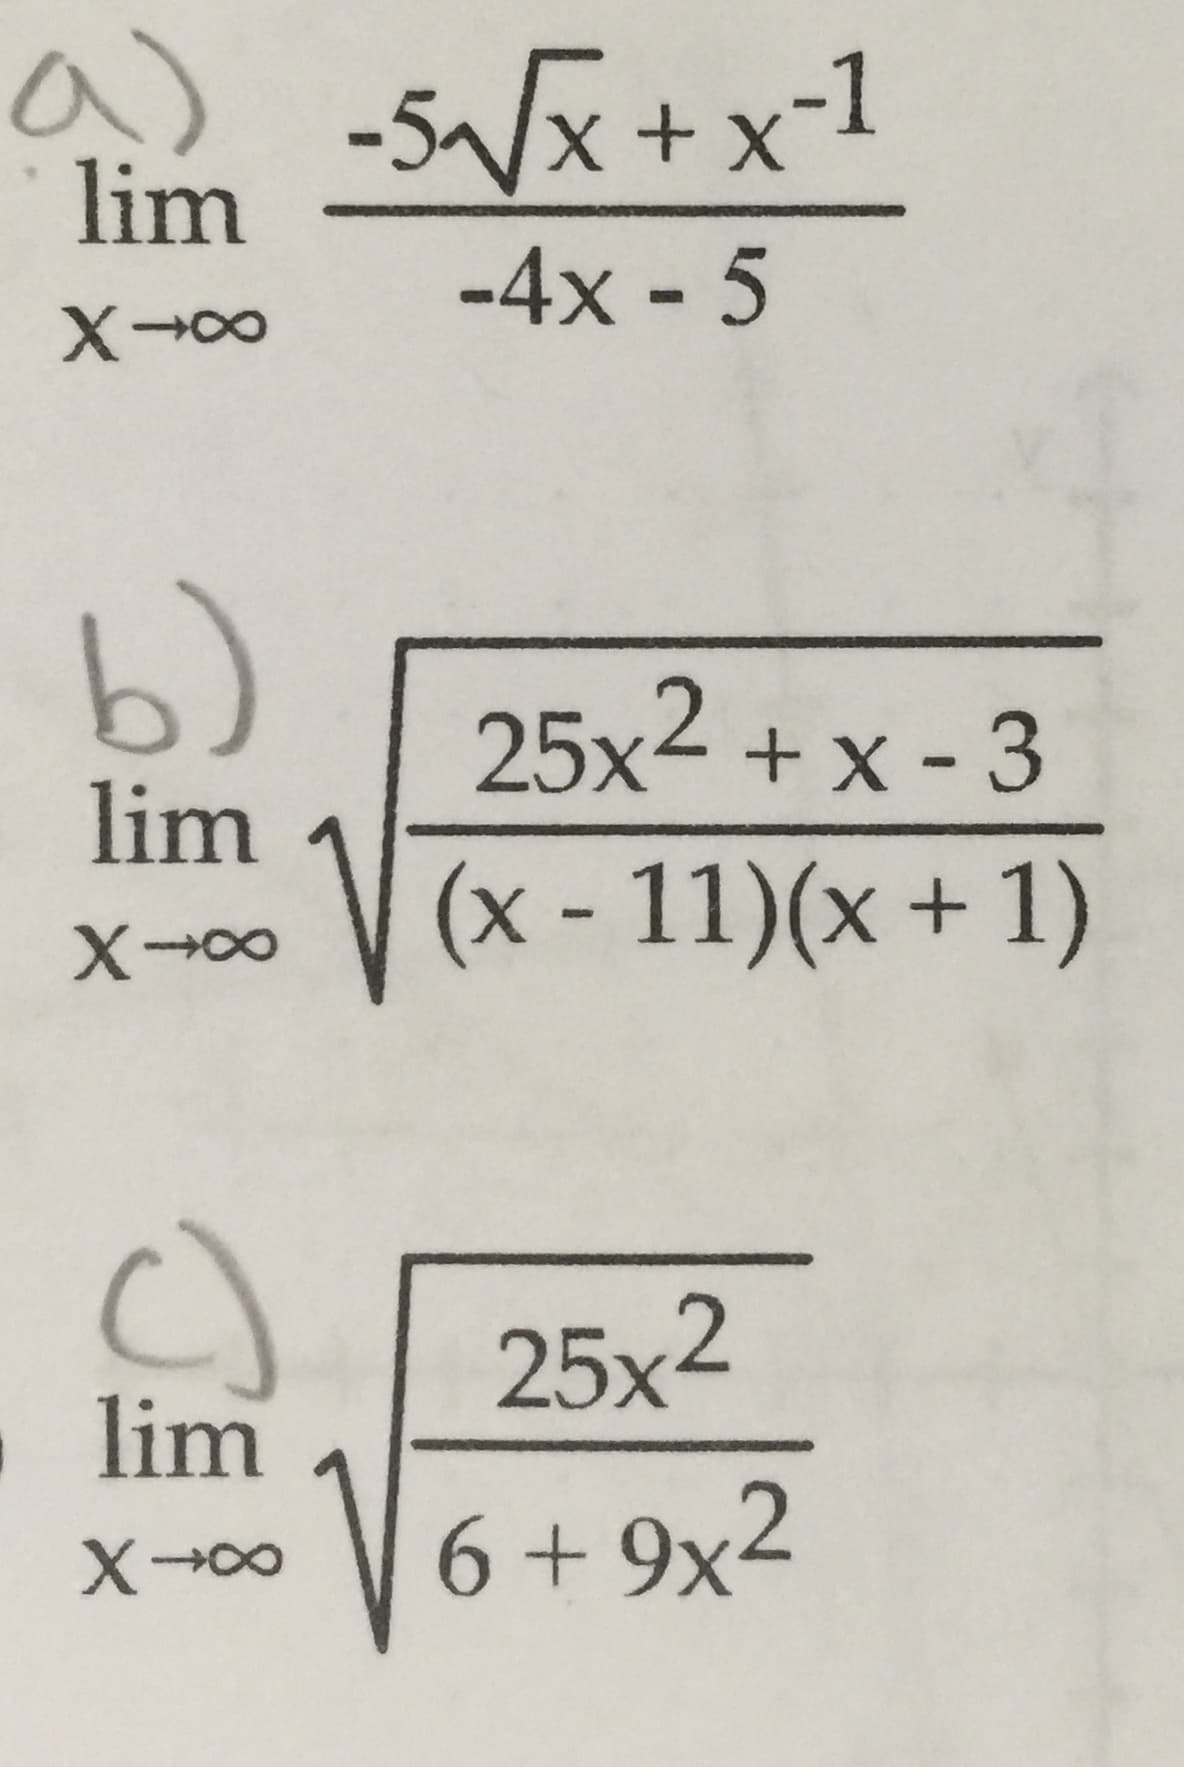 lim x+x-1
-4x - 5
X00
25x2x -3
lim
(x-11)(x + 1)
25x2
lim
6+9x2
X0o
